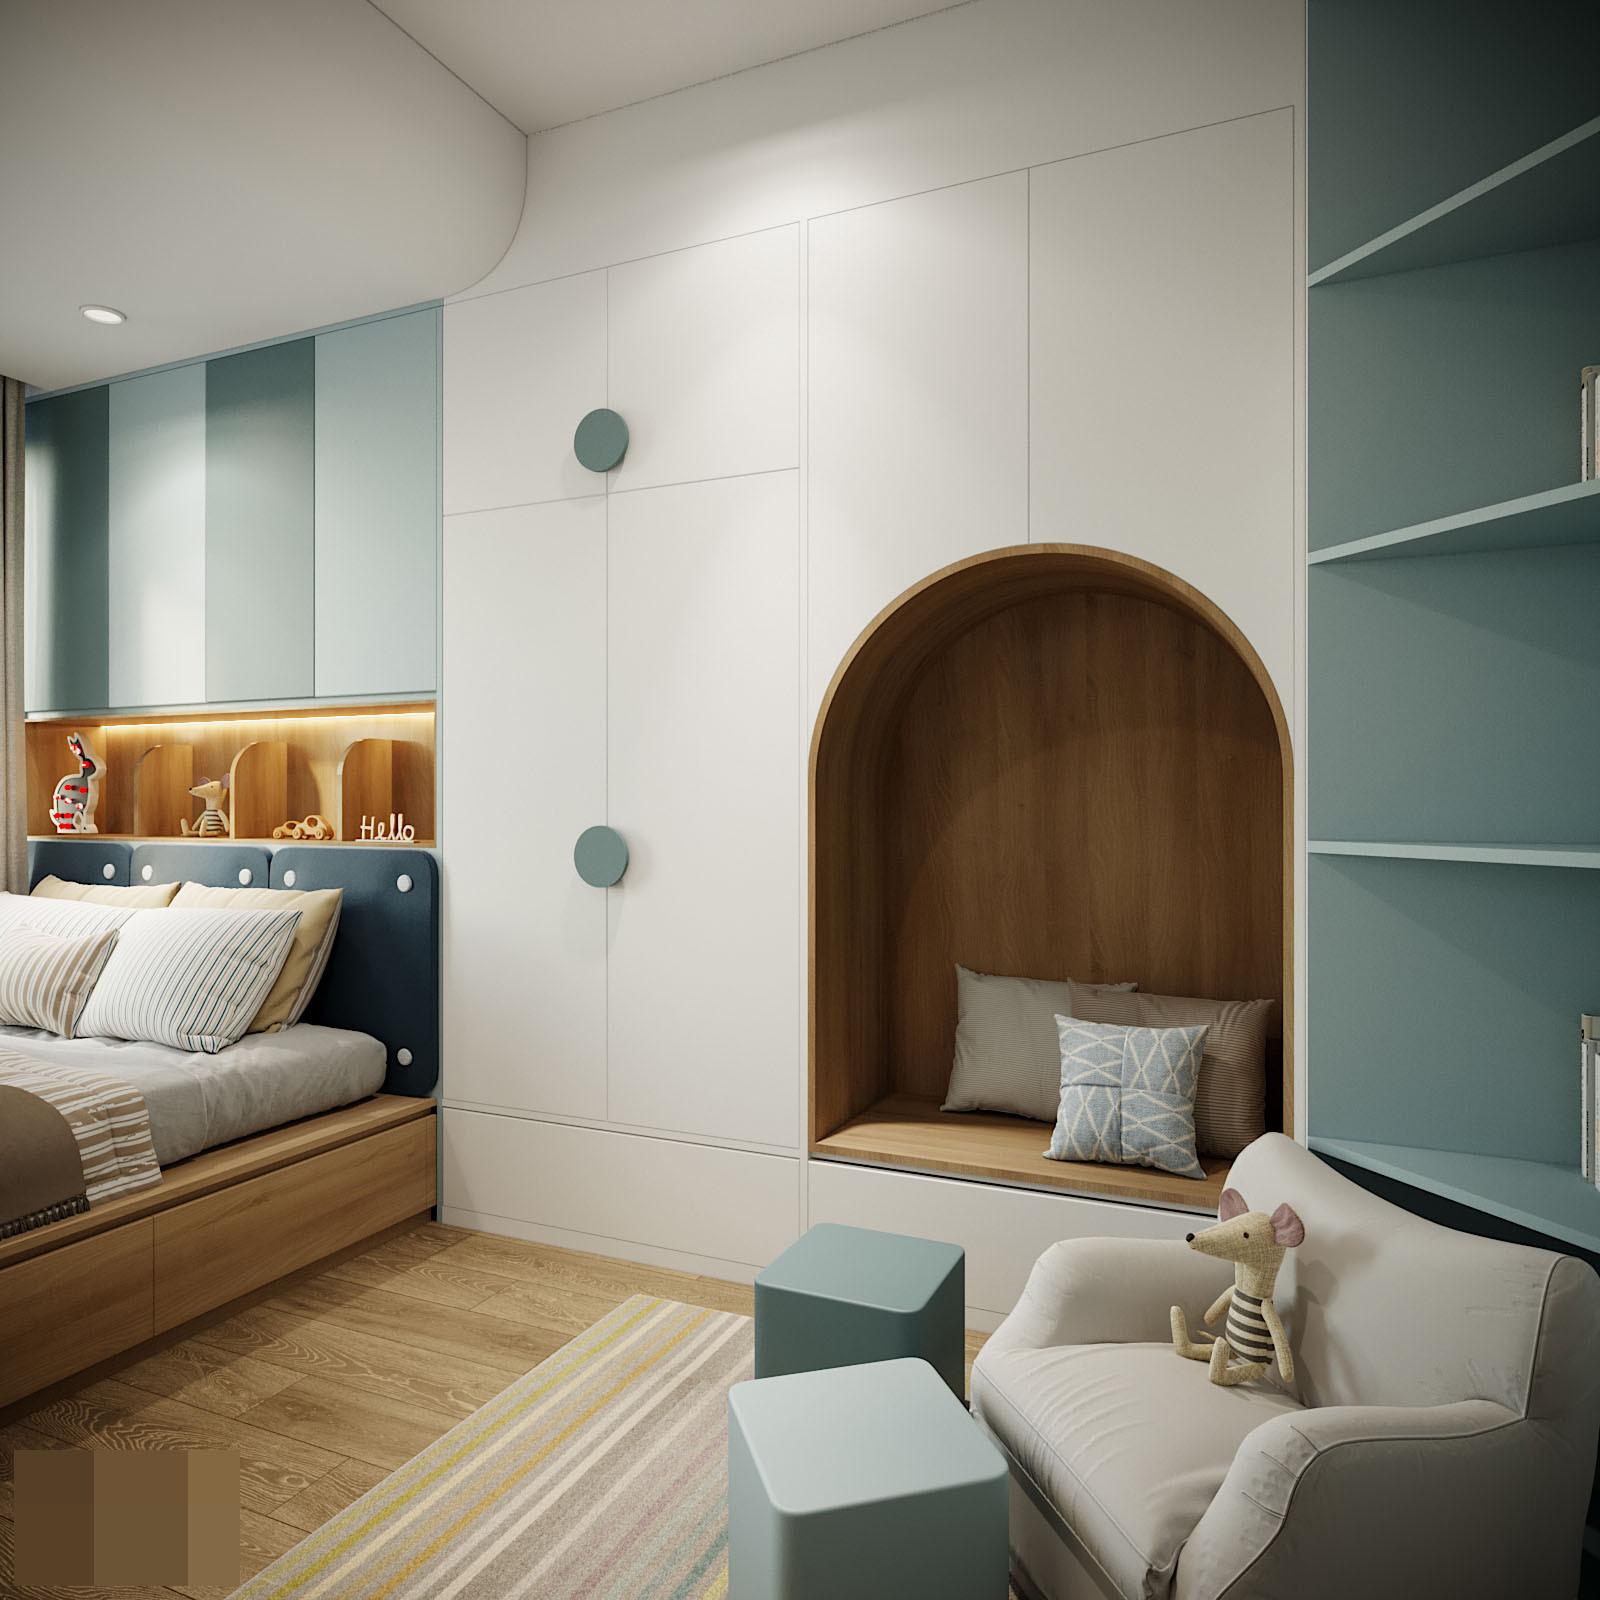 Căn hộ 3 ngủ hiện đại, nội thất đơn giản nhưng sở hữu các góc đẹp ‘thần thánh’